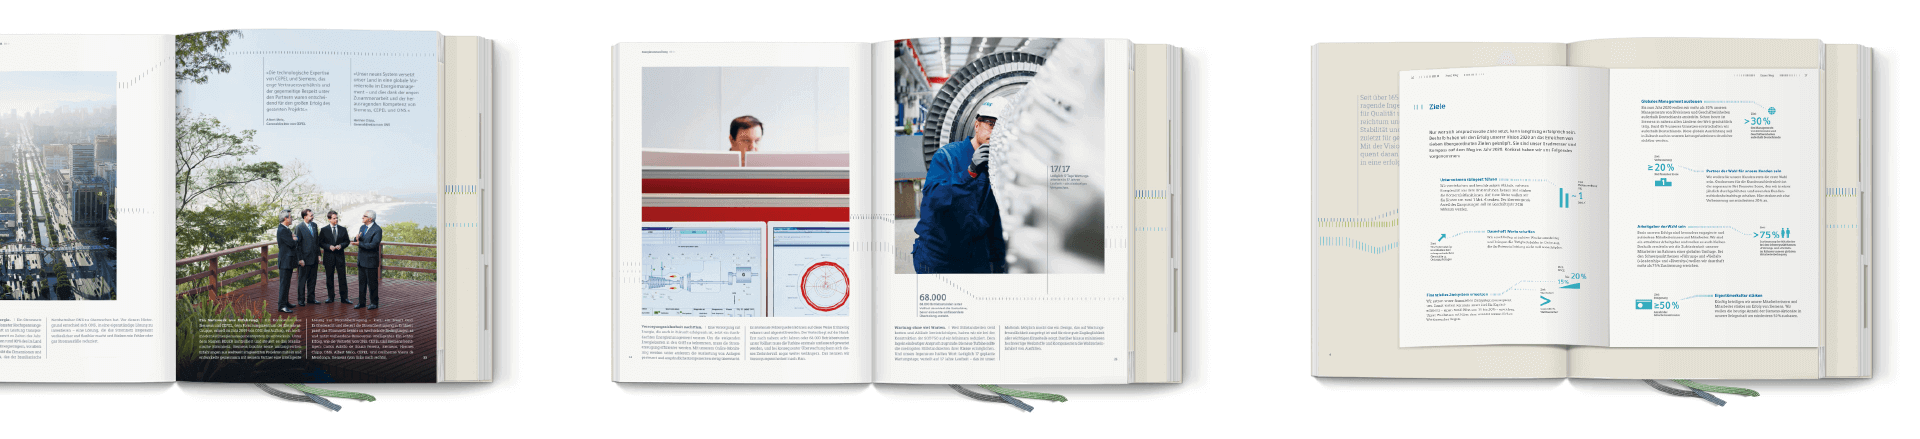 Doppelseiten aus dem Siemens Jahresbericht 2014 mit Fotografie, Typografie und Pictogrammen